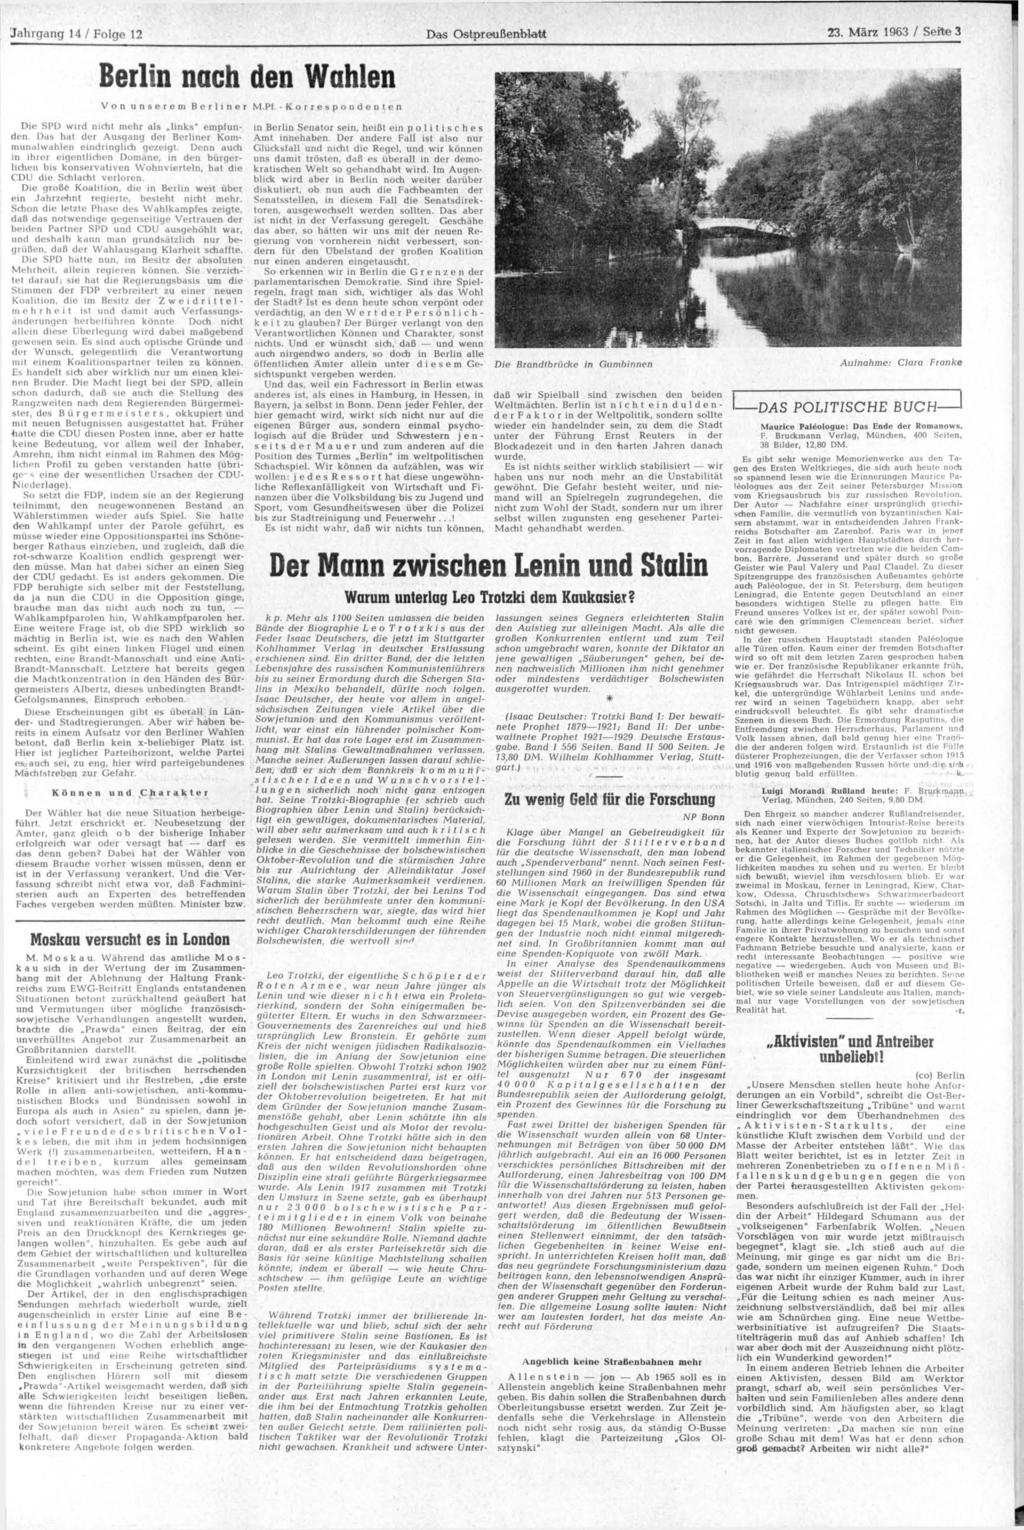 Jahrgang 14 / Folge 12 Da«Ostpreußenblatt 23. März 1963 / Seite 3 Berlin nach den Wahlen Von Der Wähler hat die neue Situation herbeigeführt. Jetzt erschrickt er.